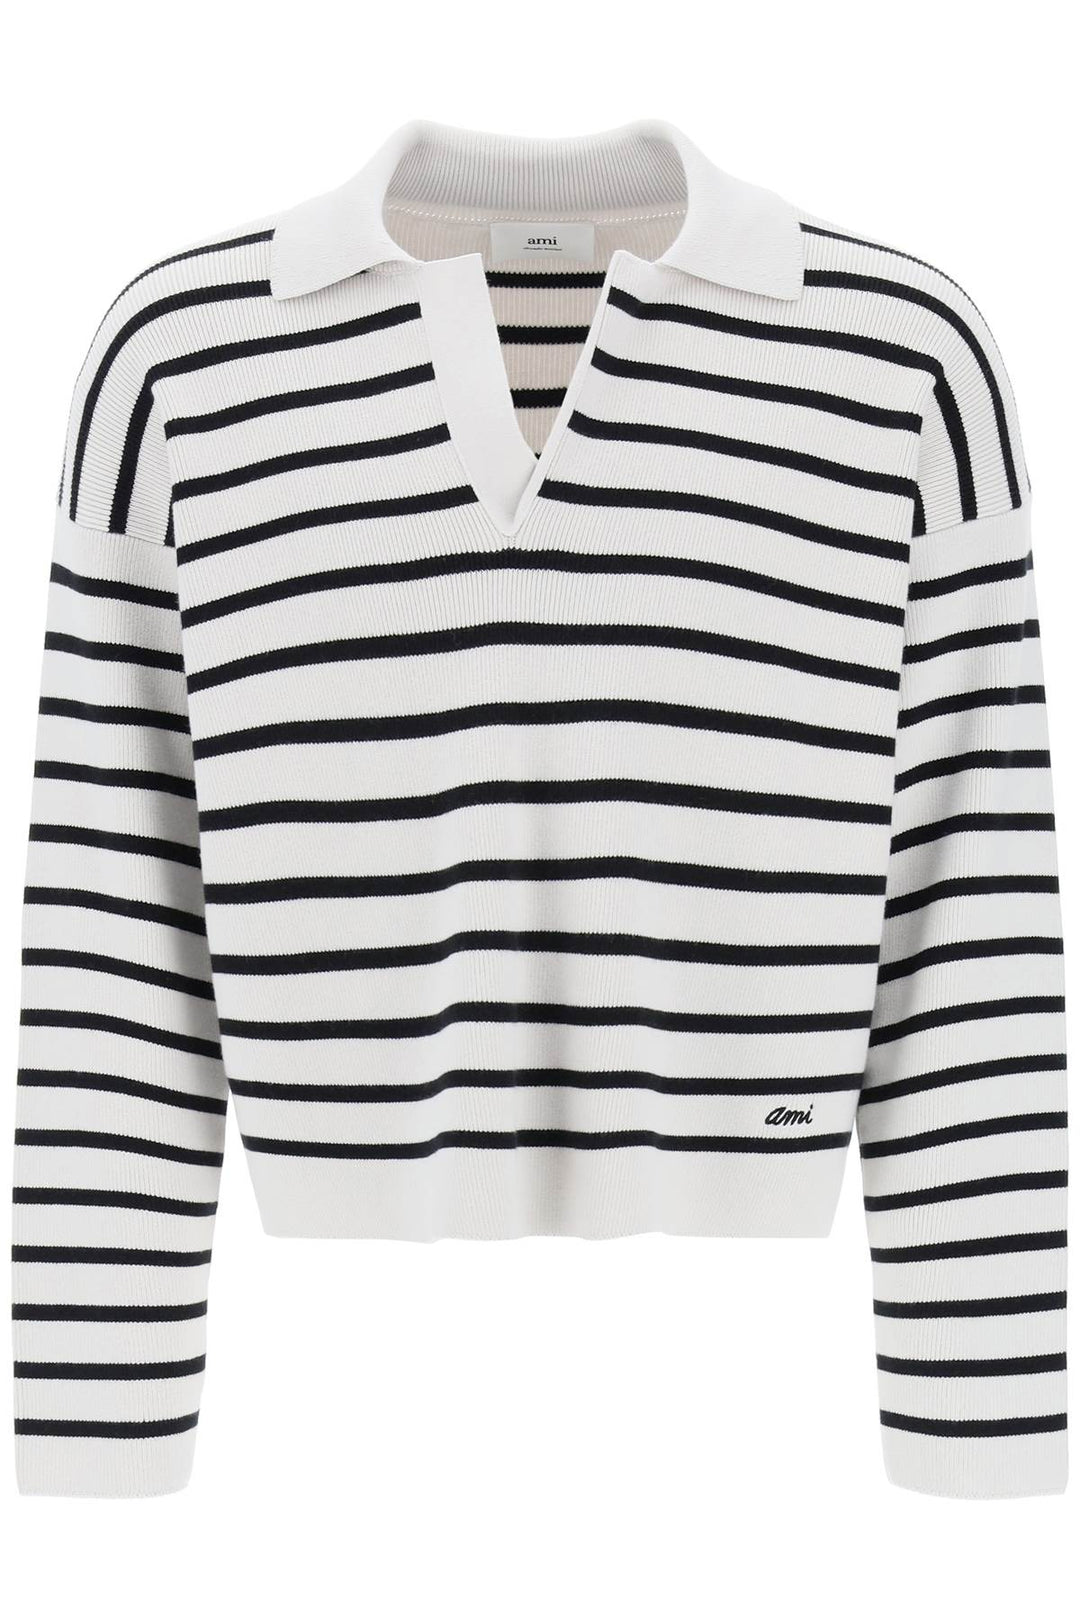 Ami paris striped v-neck magic pullover sweater.-0